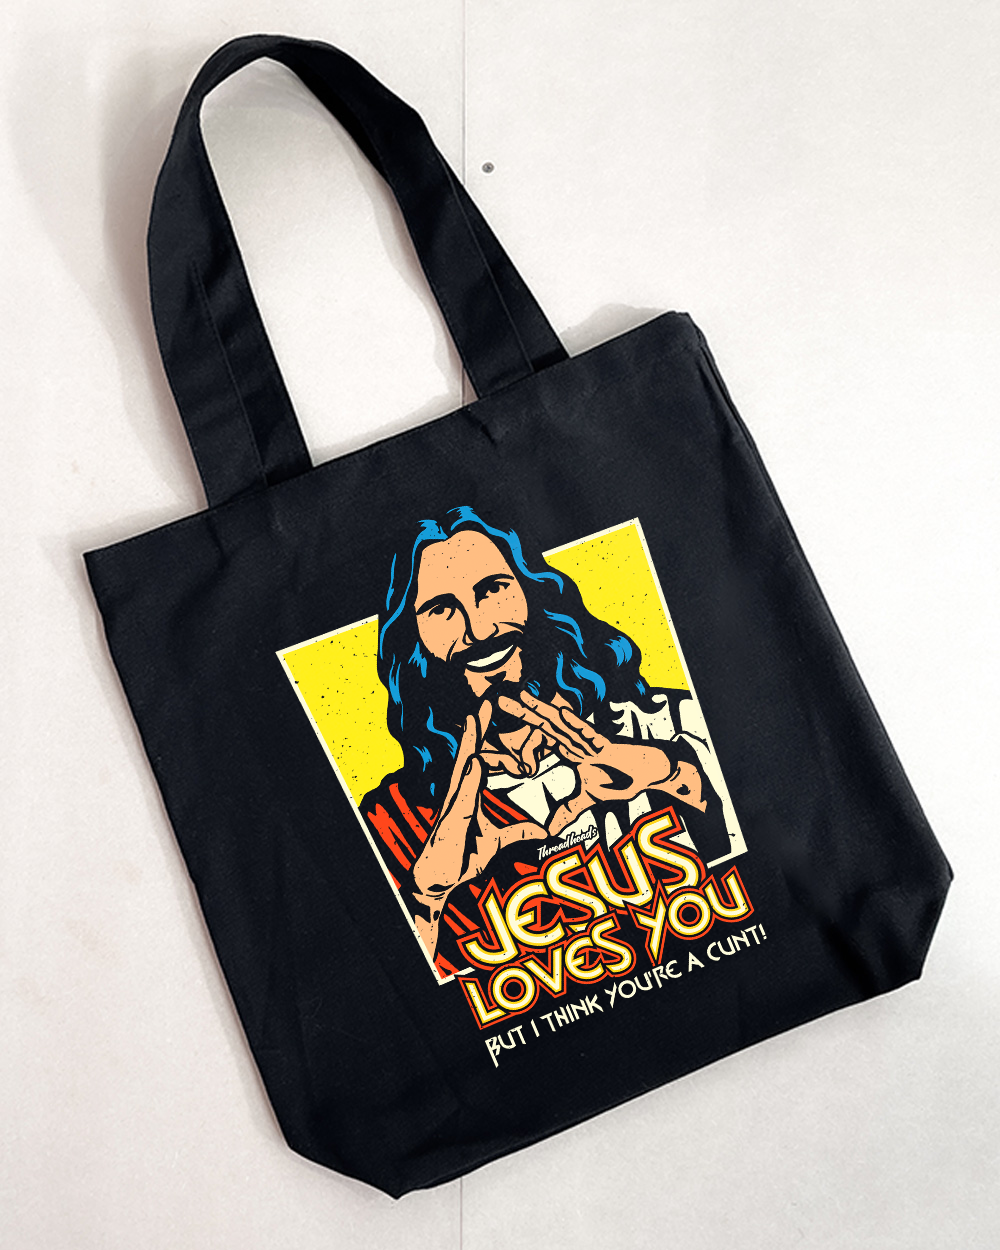 Jesus Loves You Tote Bag Australia Online Black